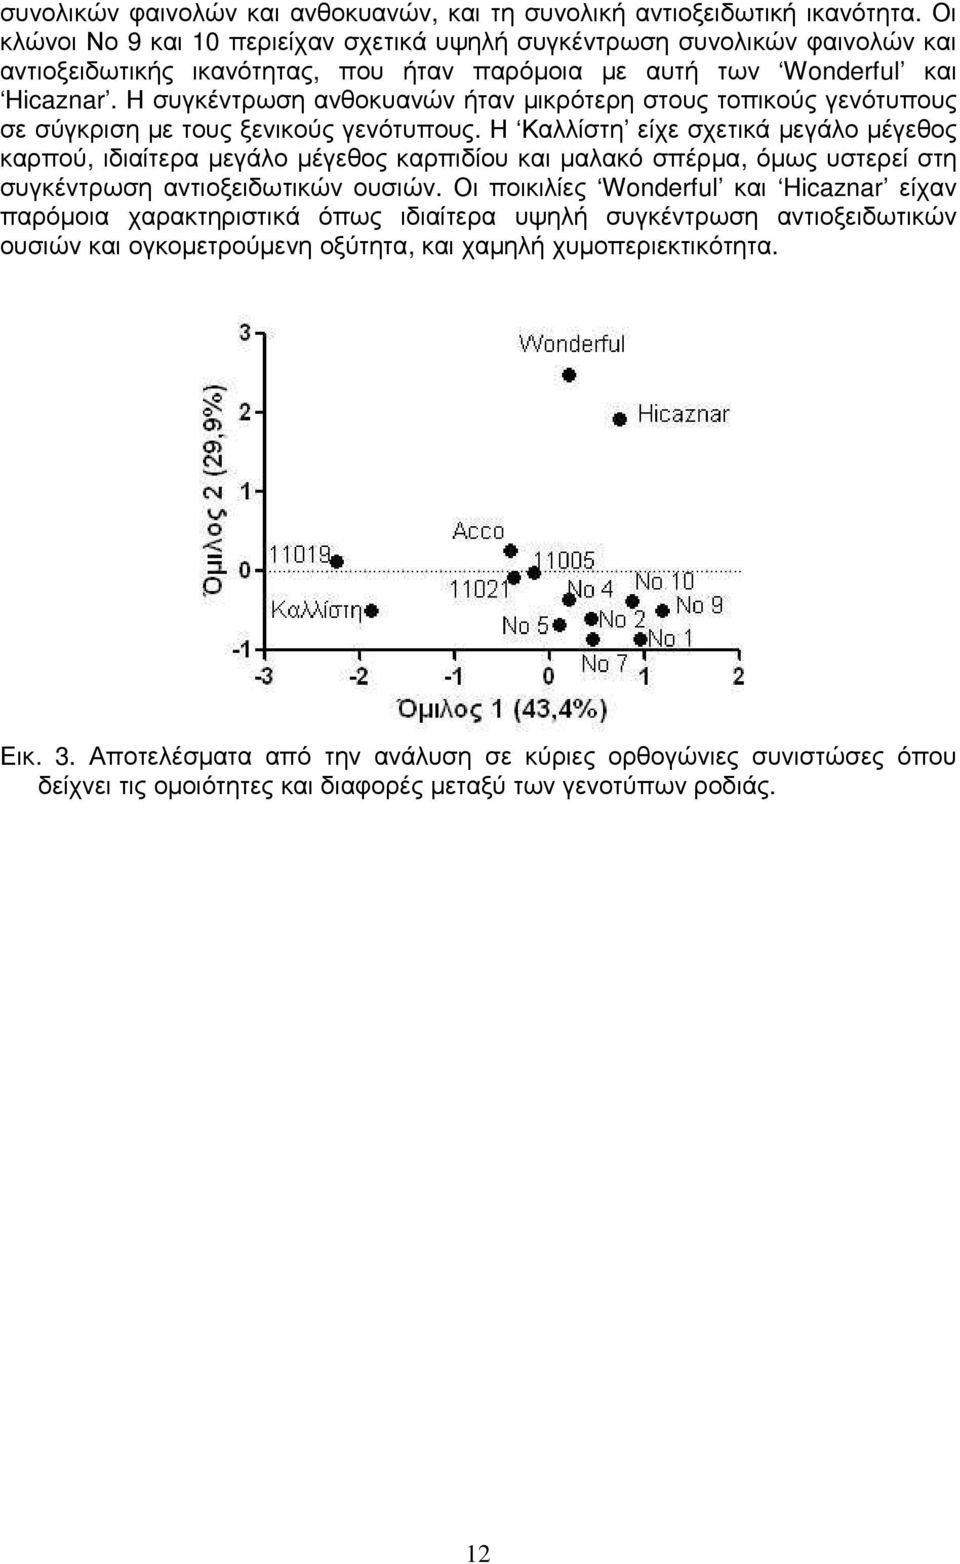 Η συγκέντρωση ανθοκυανών ήταν µικρότερη στους τοπικούς γενότυπους σε σύγκριση µε τους ξενικούς γενότυπους.